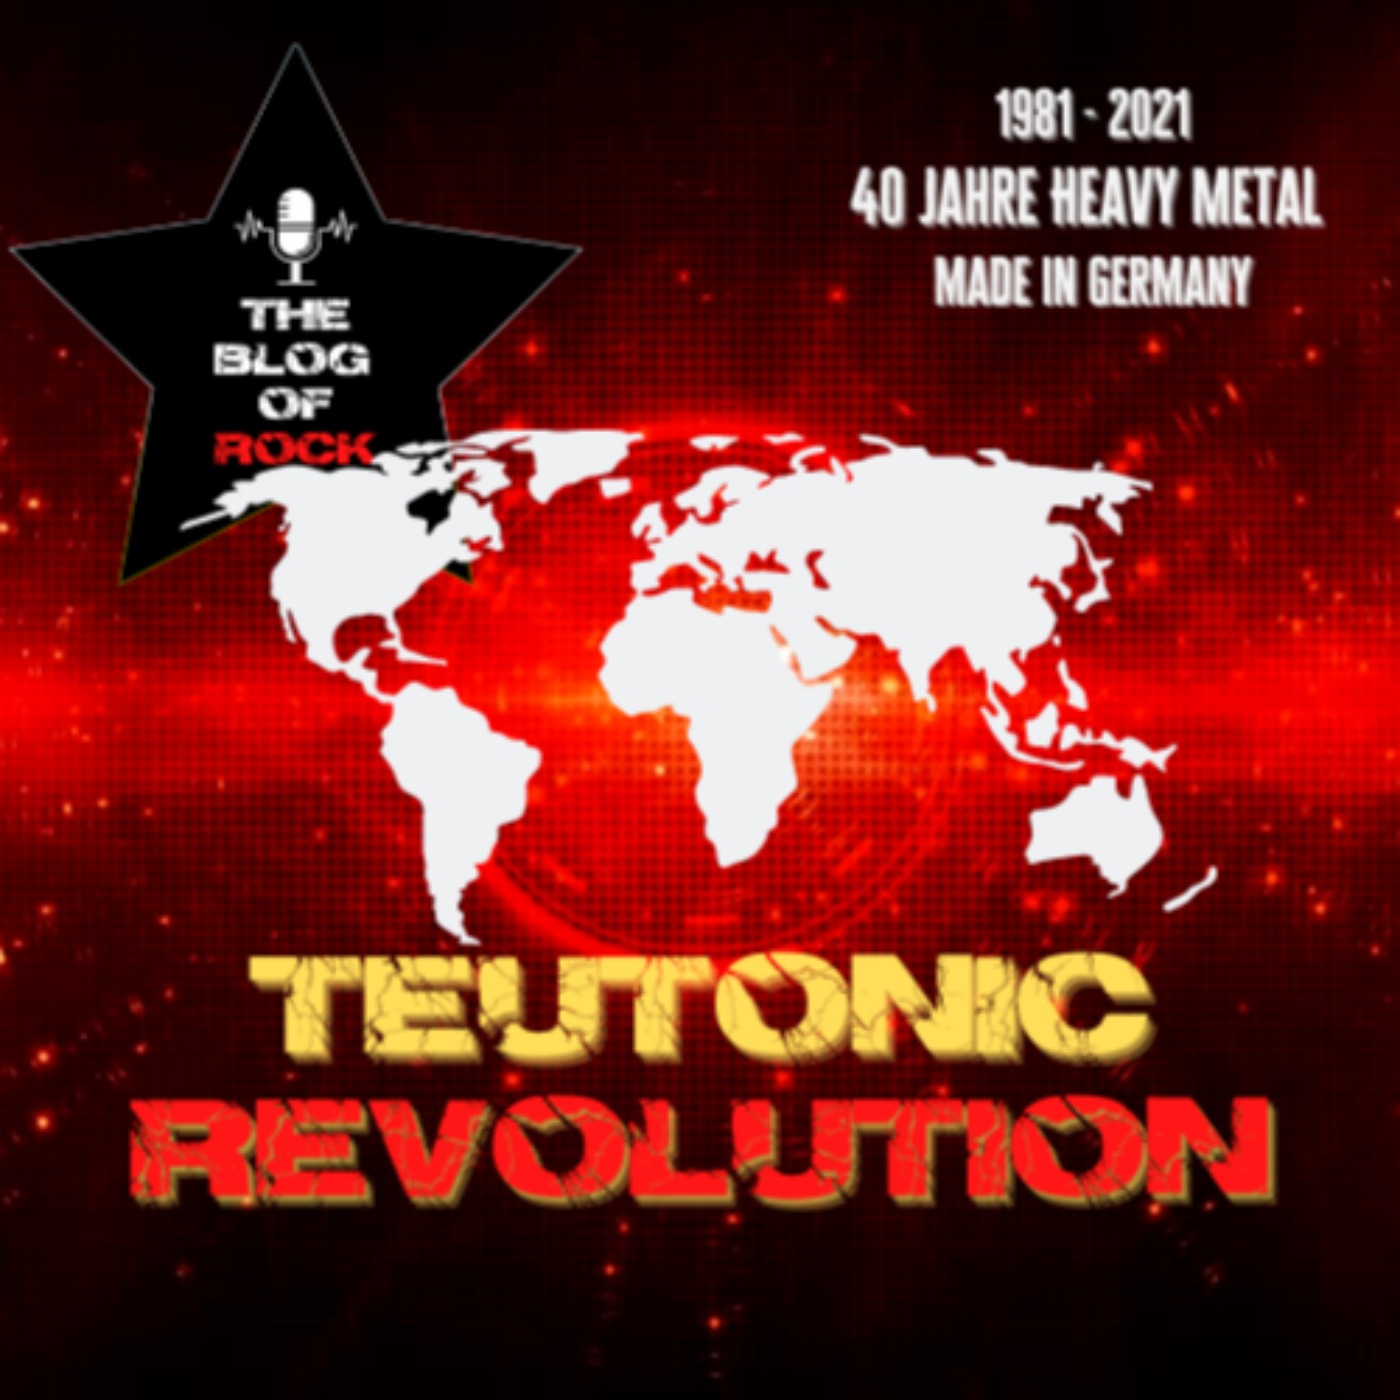 TEUTONIC REVOLUTION Worldwide - Deutsche Wertarbeit erobert die Welt